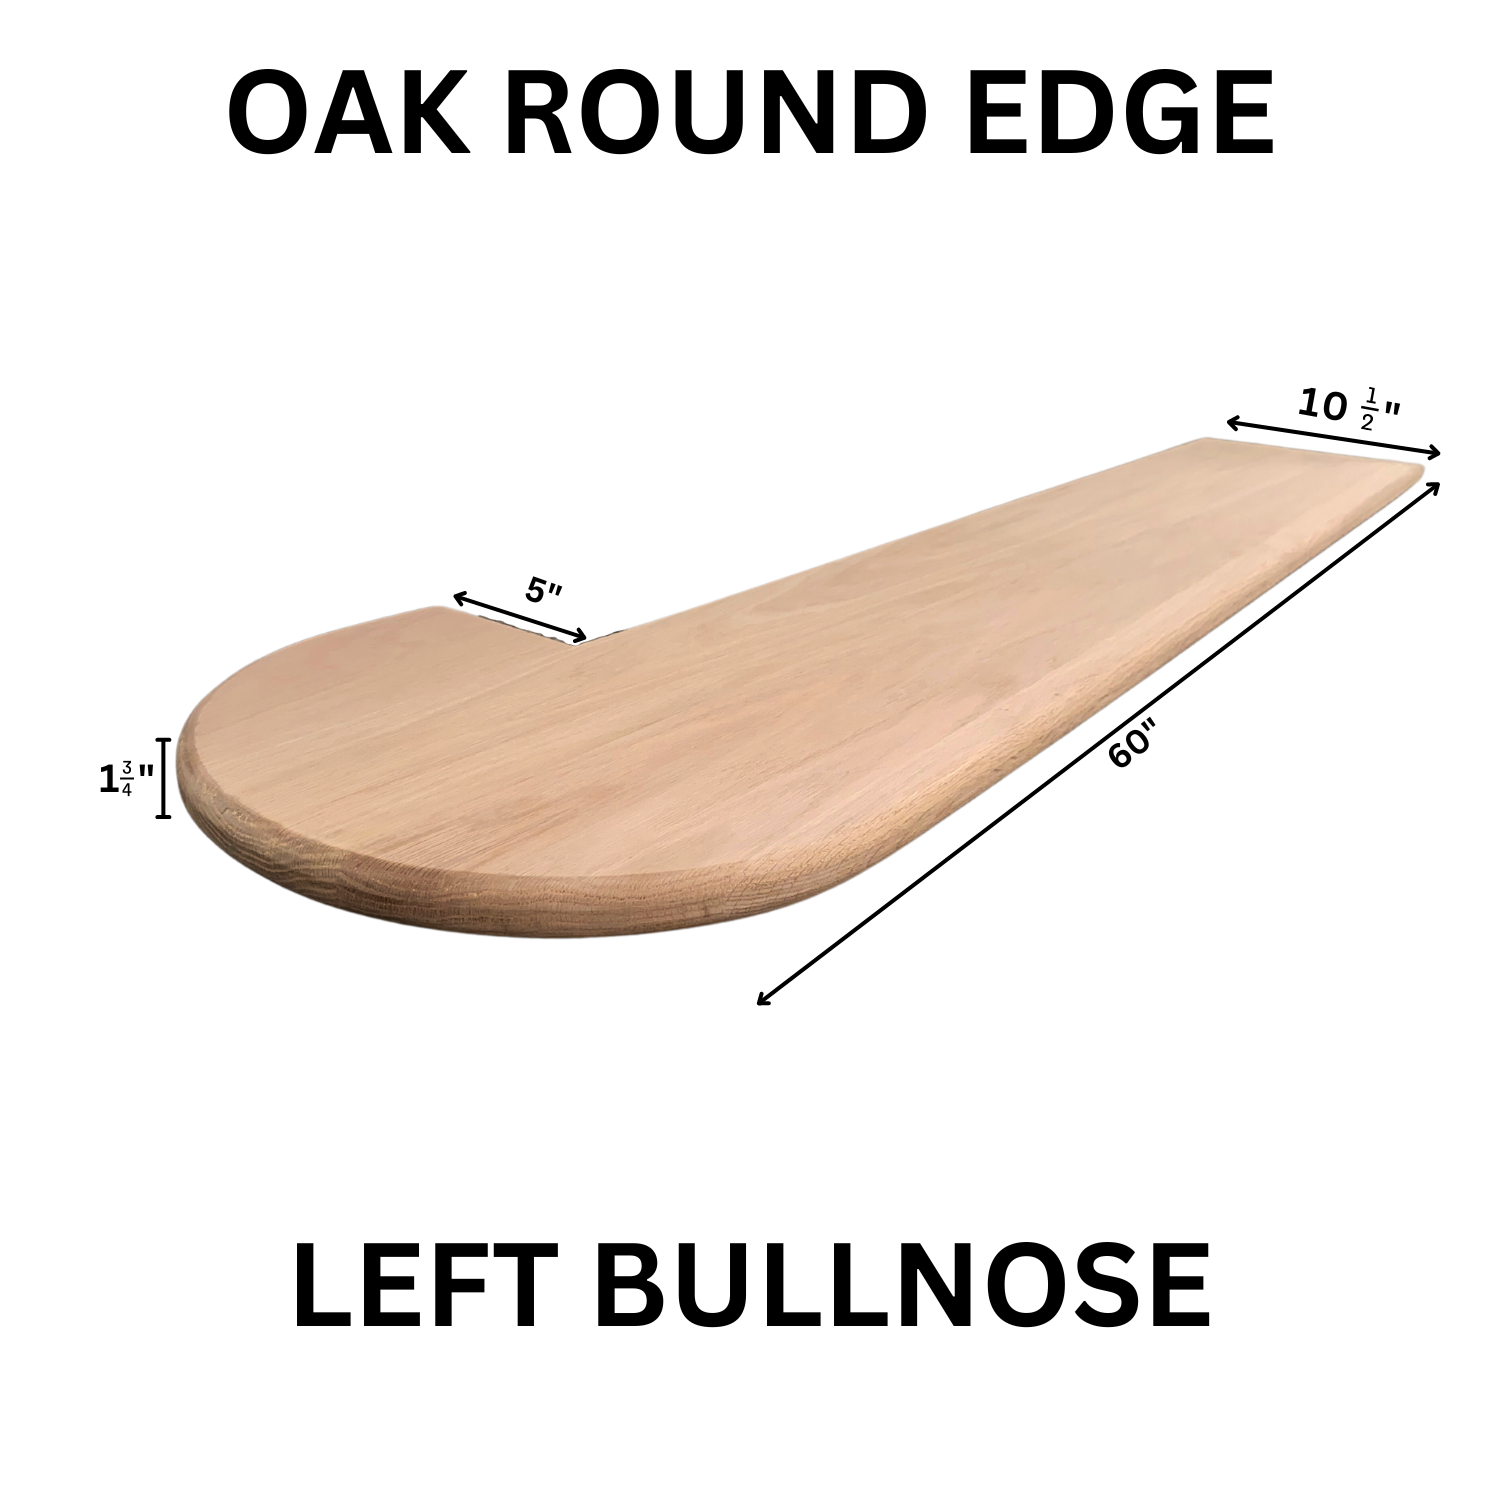 Red Oak Round Edge Tread Bullnose Left ORET-BL